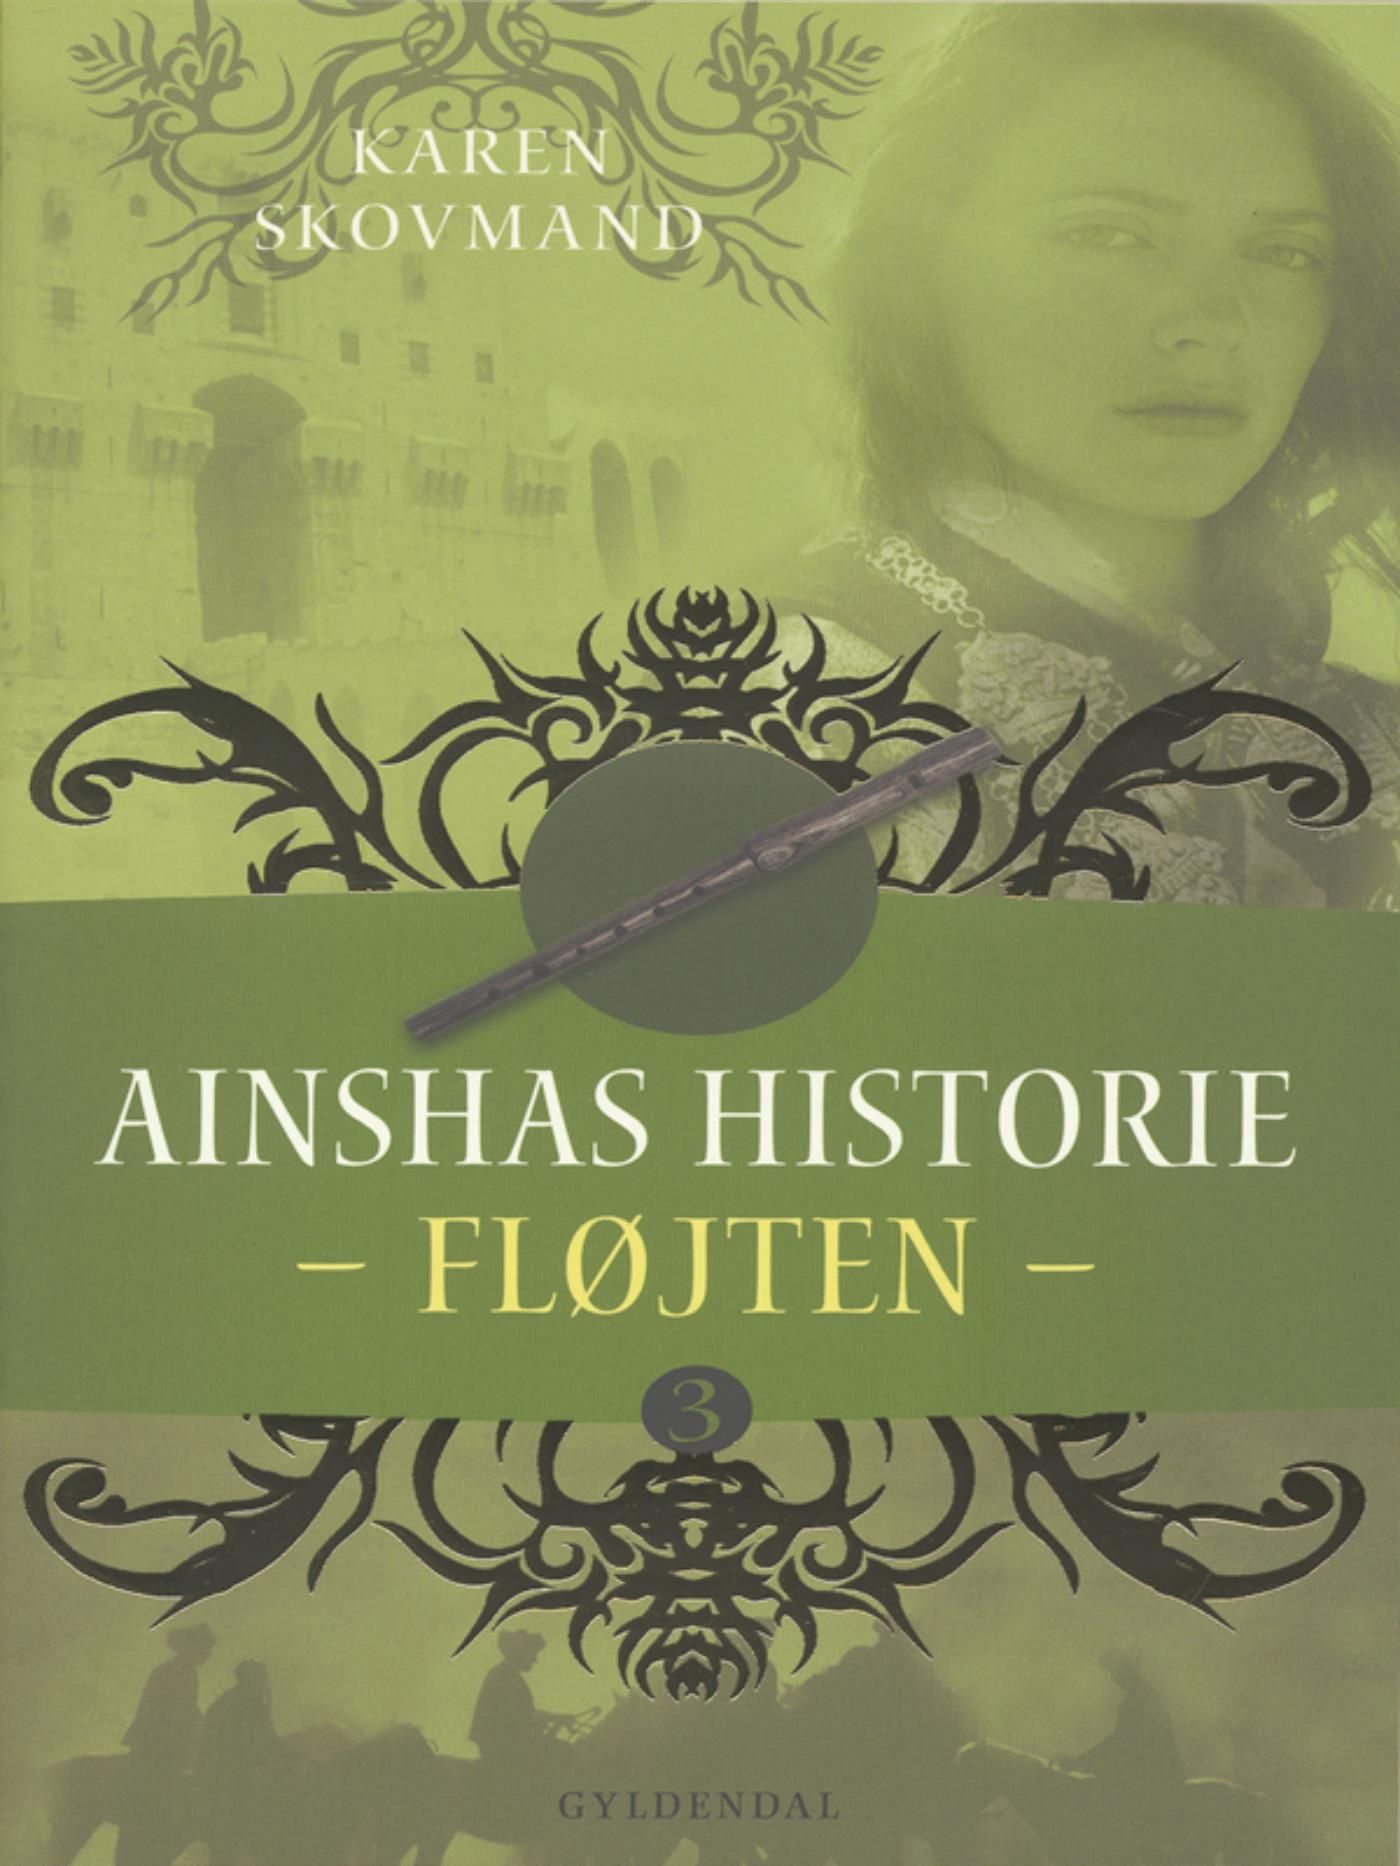 Ainshas historie 3 - Fløjten, e-bok av Karen Skovmand Jensen